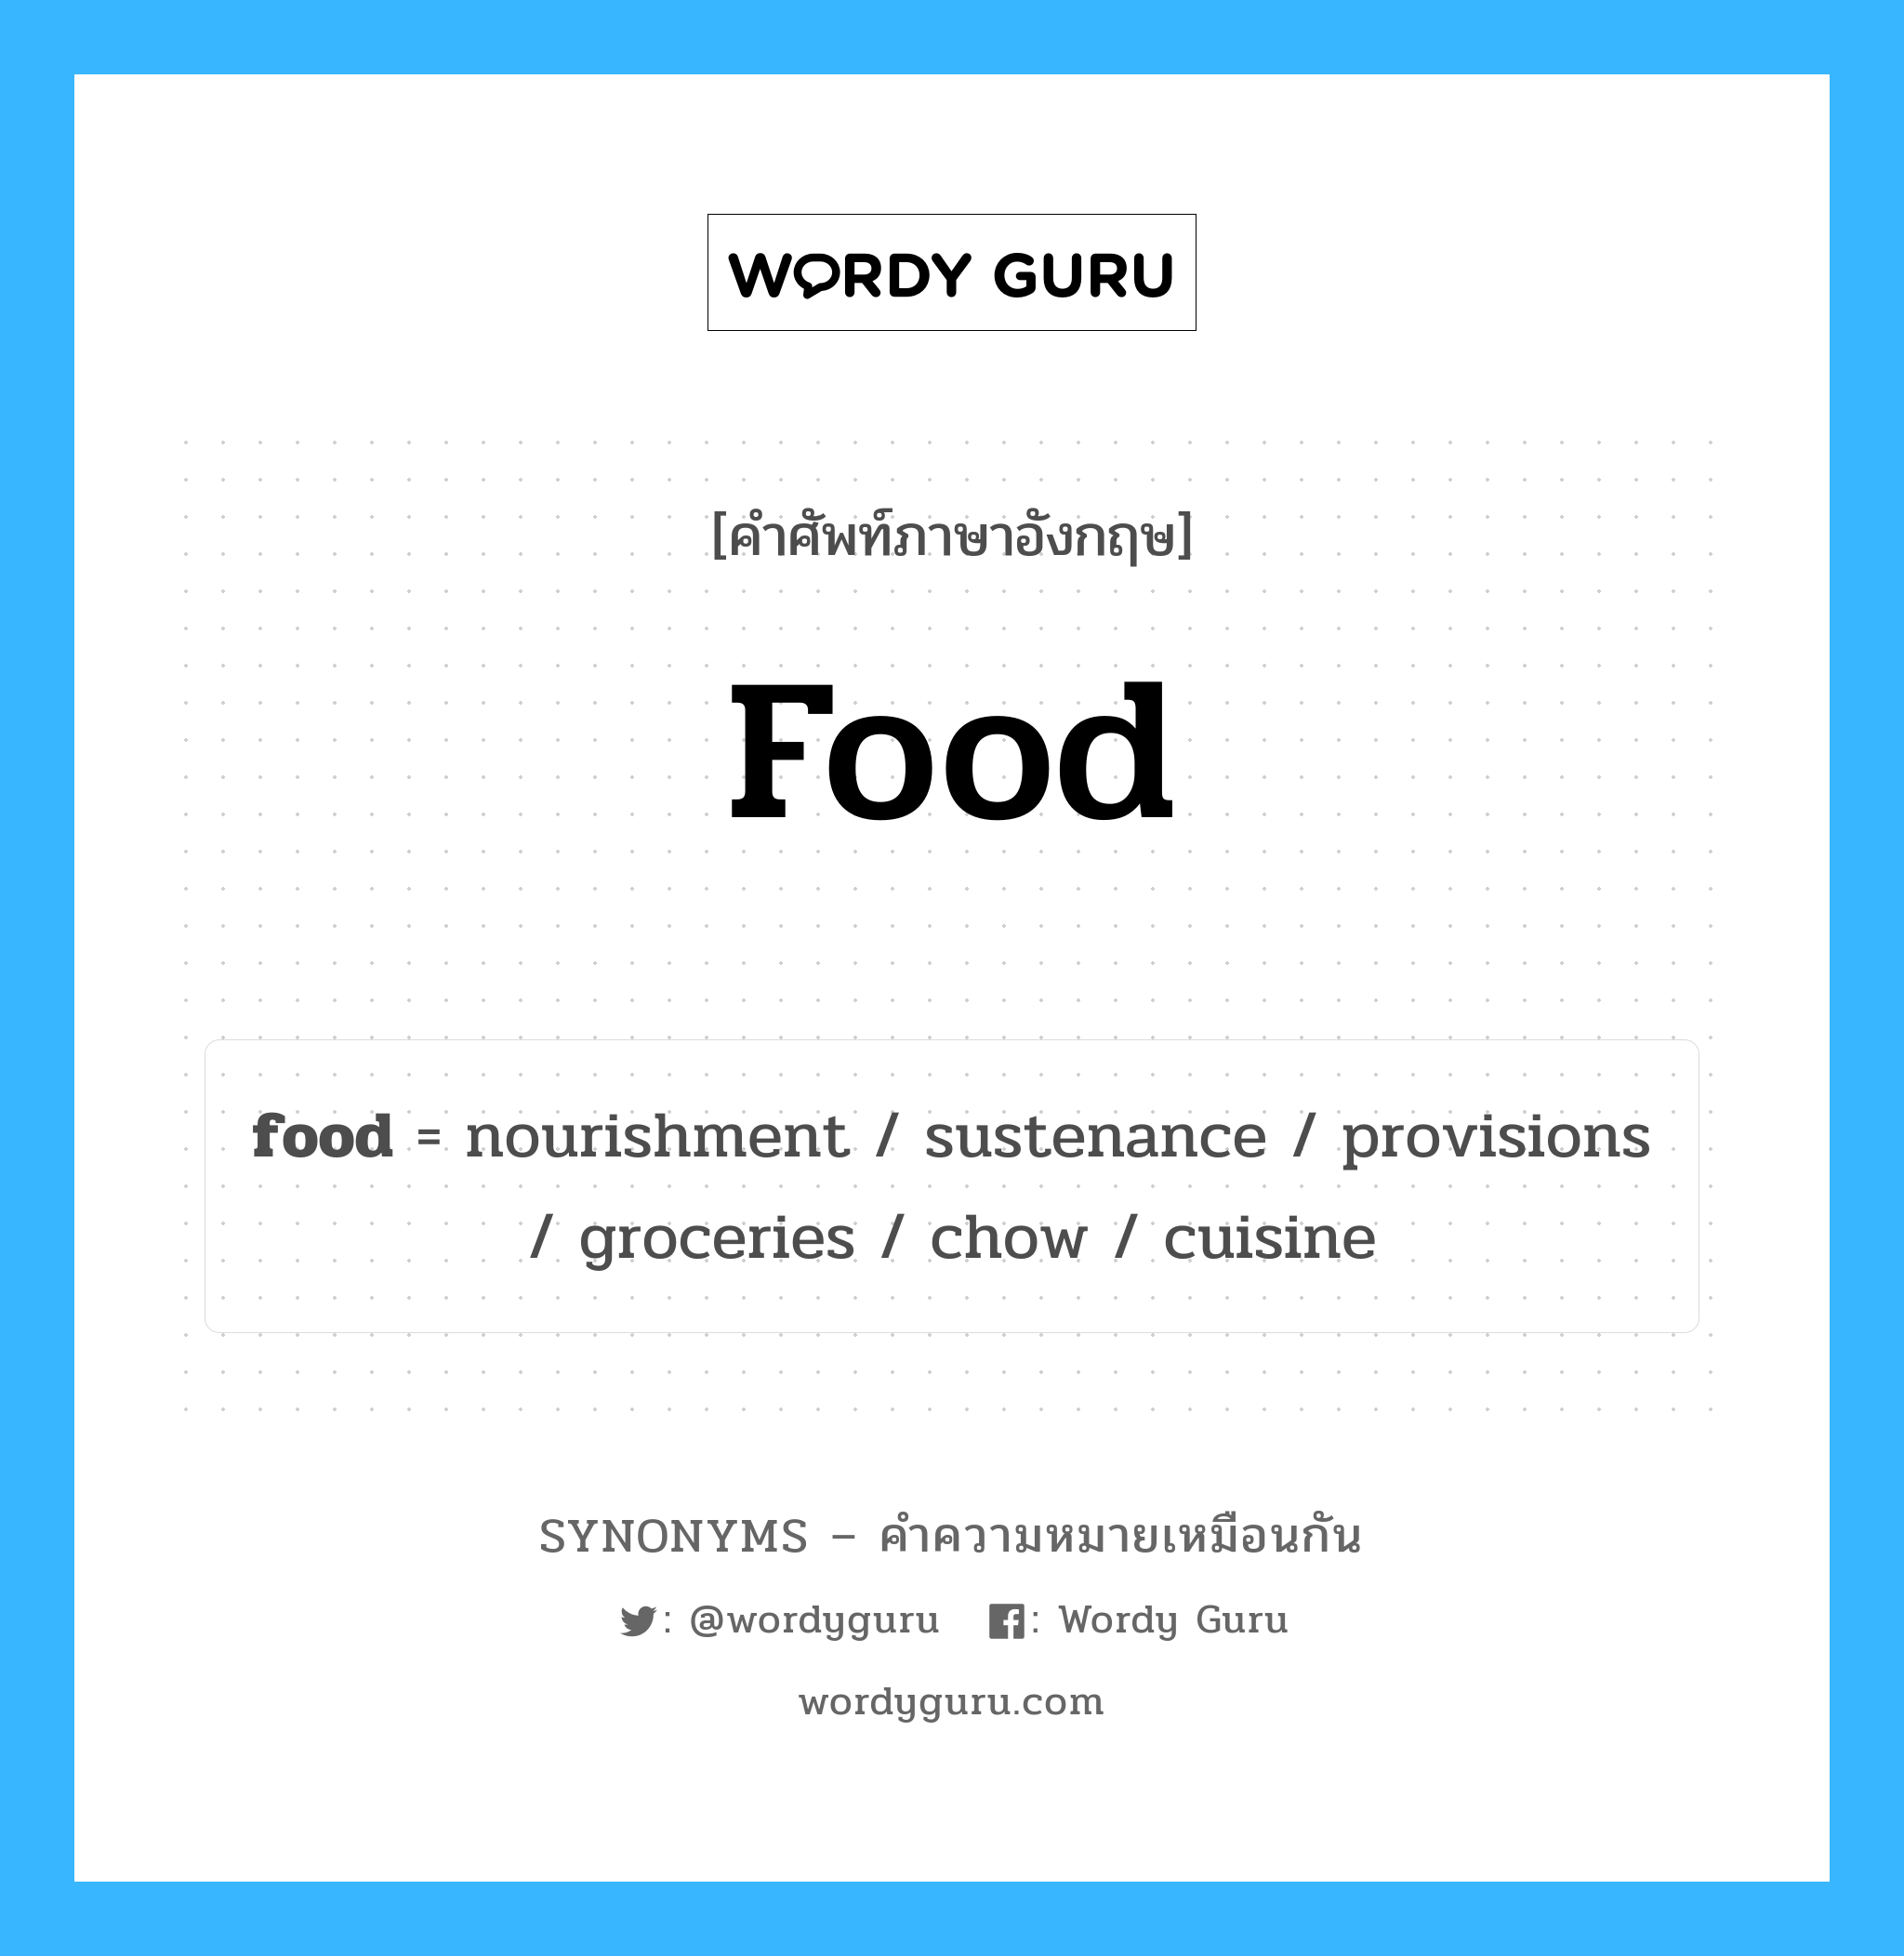 groceries เป็นหนึ่งใน food และมีคำอื่น ๆ อีกดังนี้, คำศัพท์ภาษาอังกฤษ groceries ความหมายคล้ายกันกับ food แปลว่า รายการสินค้า หมวด food